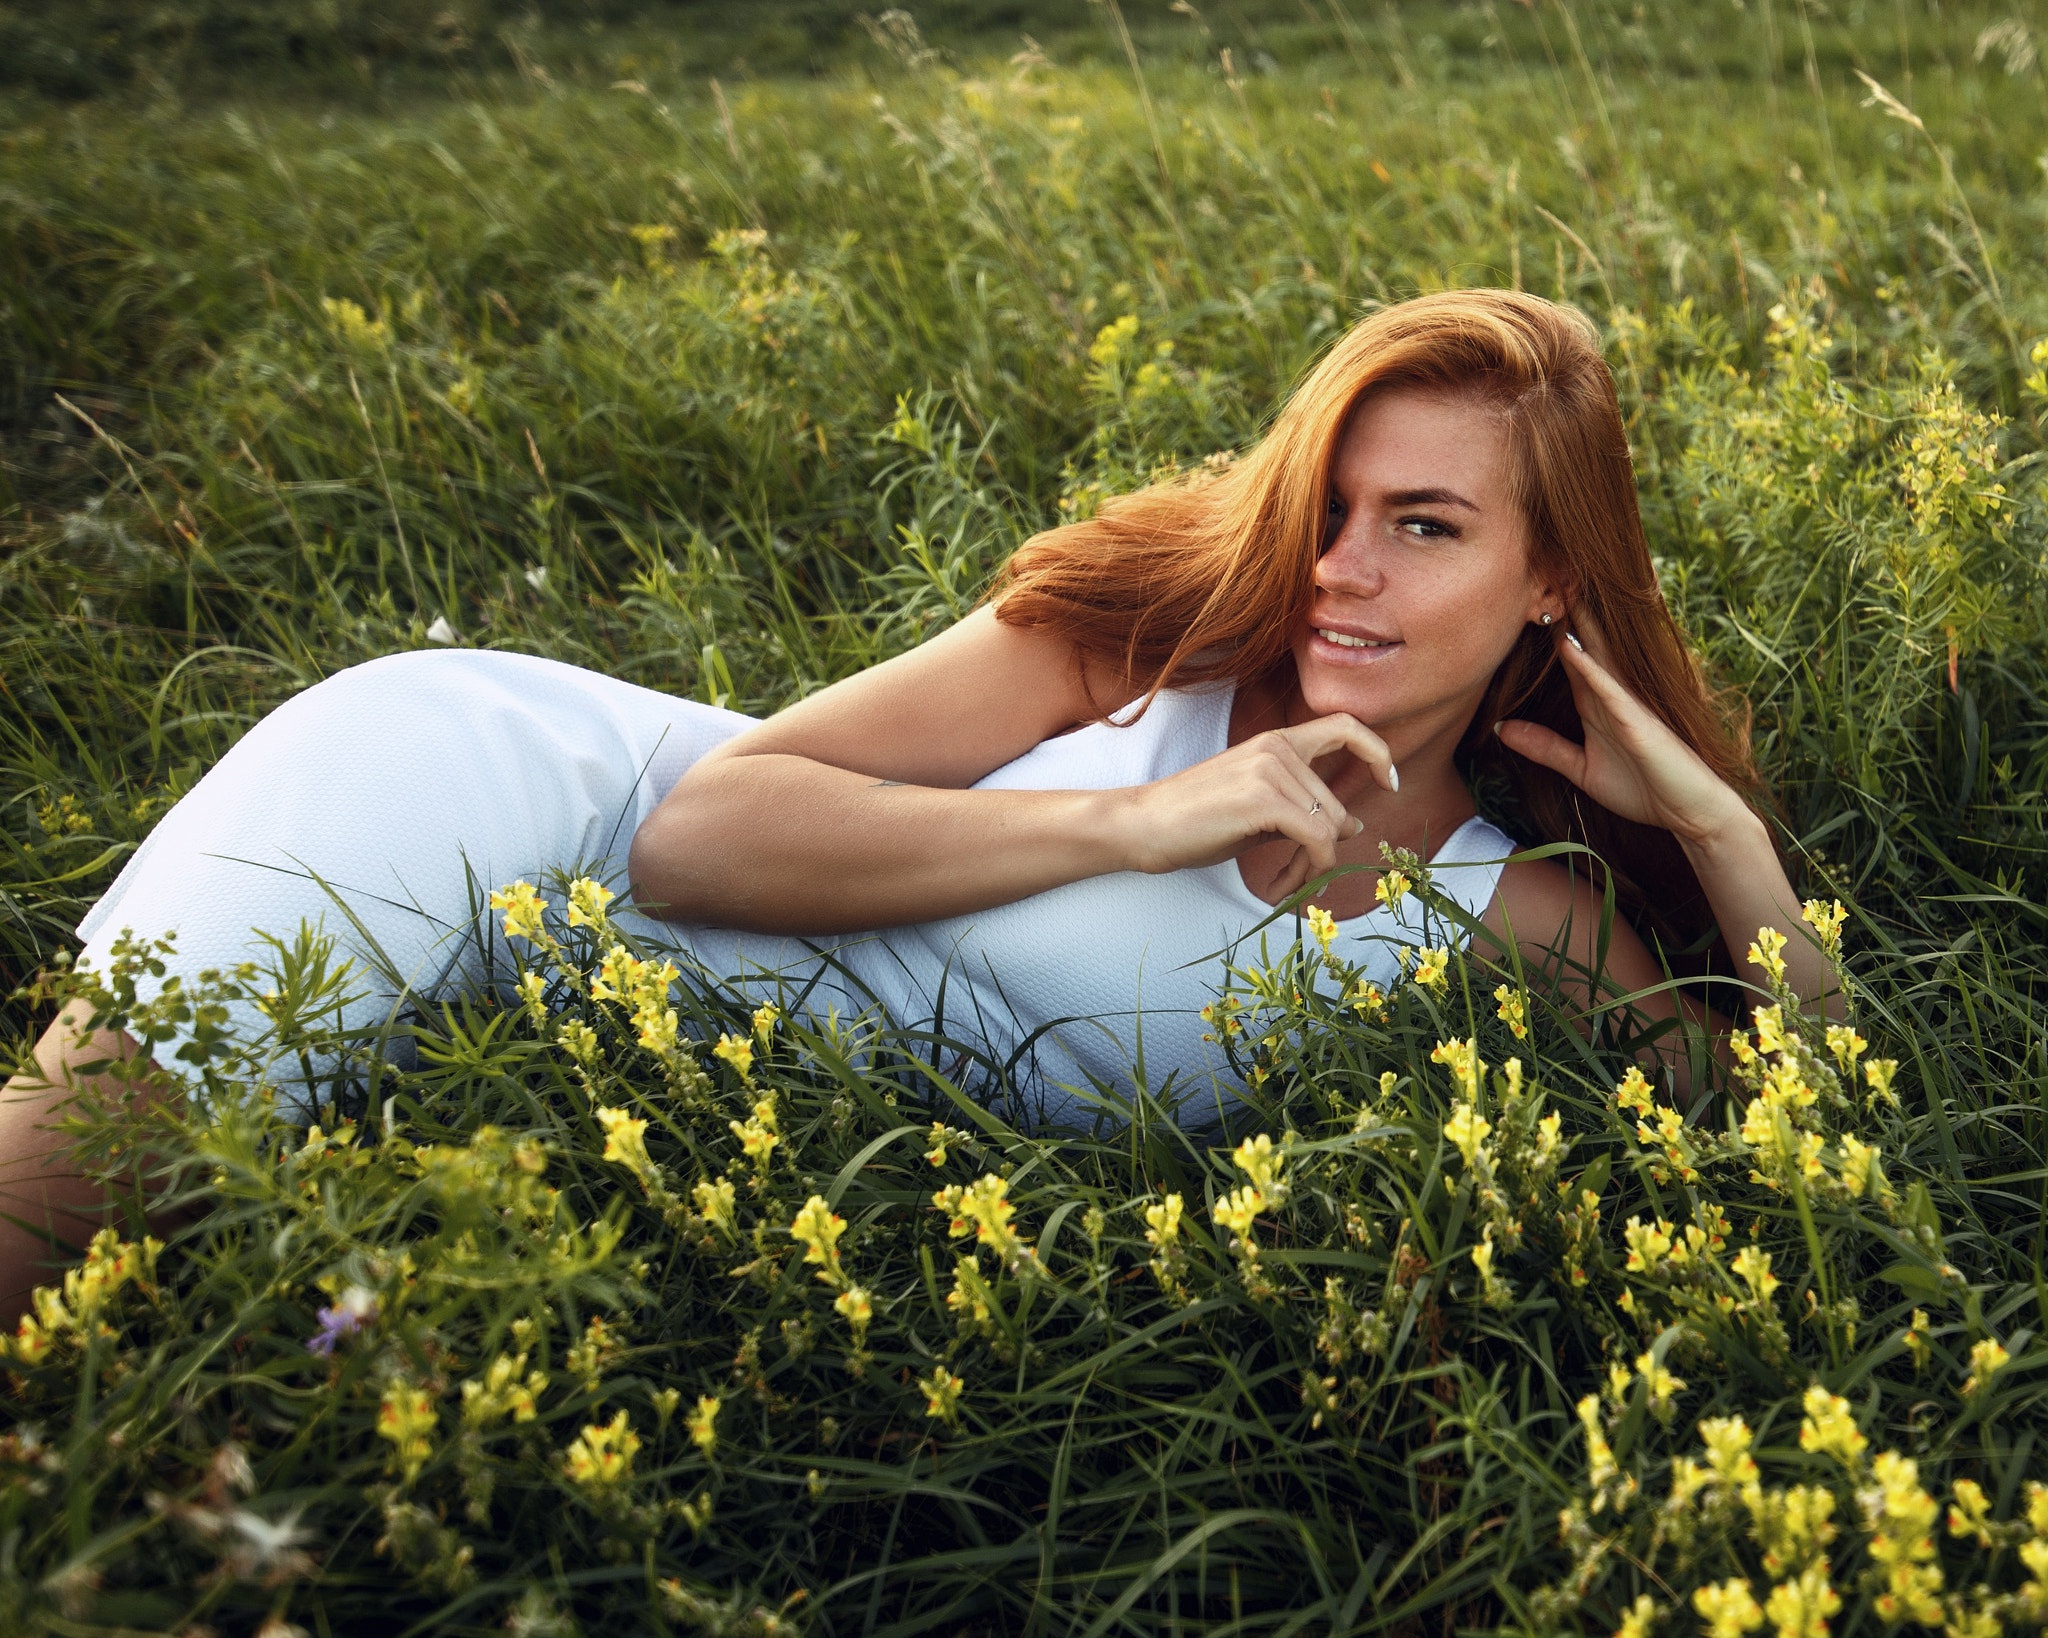 Обои на стол женщины. Рыжая девушка в траве. Девушка с длинными волосами лежит на траве с цветами. Улыбка природы.